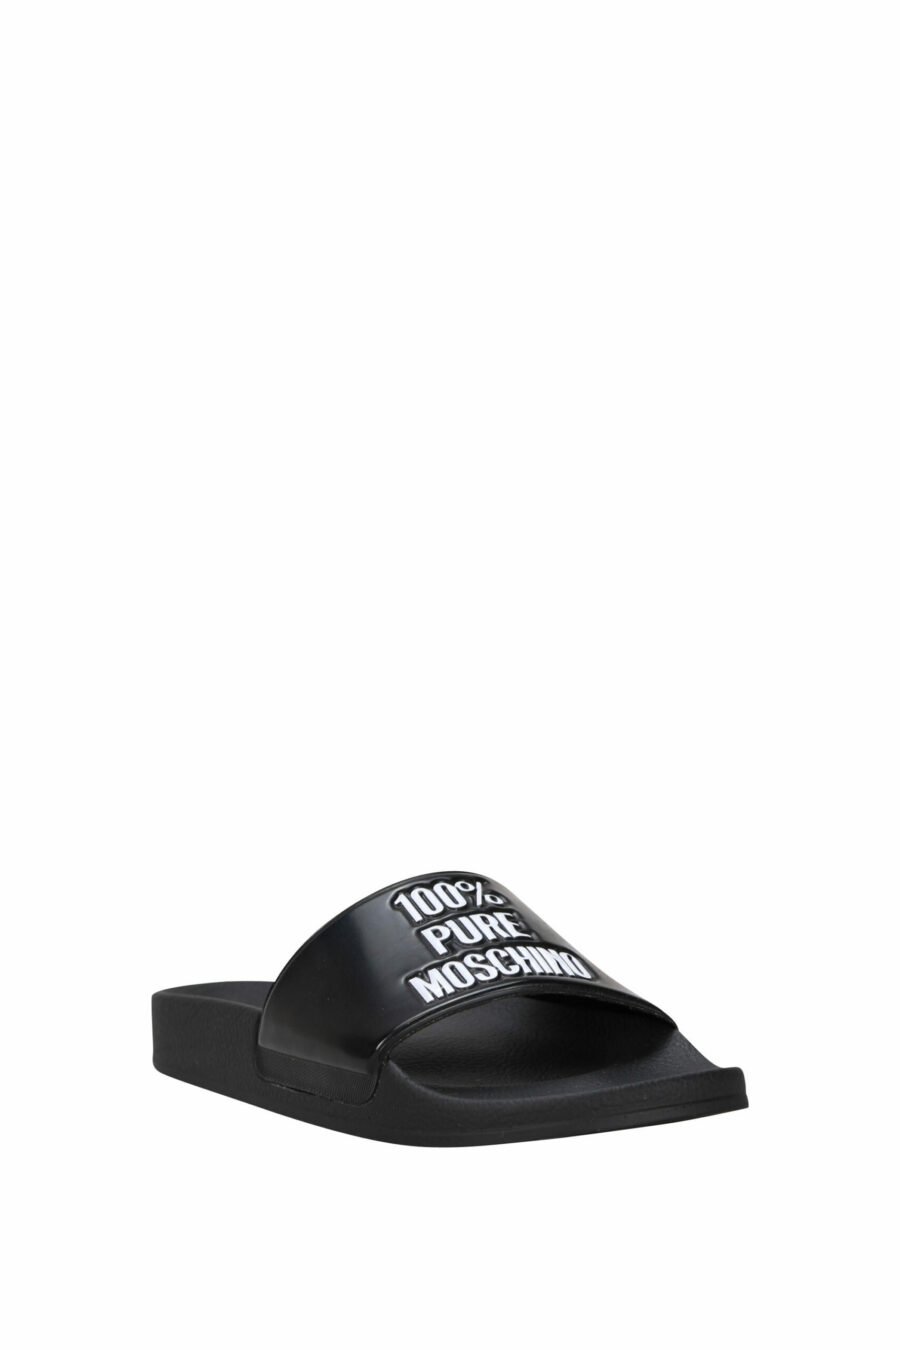 Schwarze Flip Flops mit Logo "100% pure moschino" - 8054388527972 1 skaliert